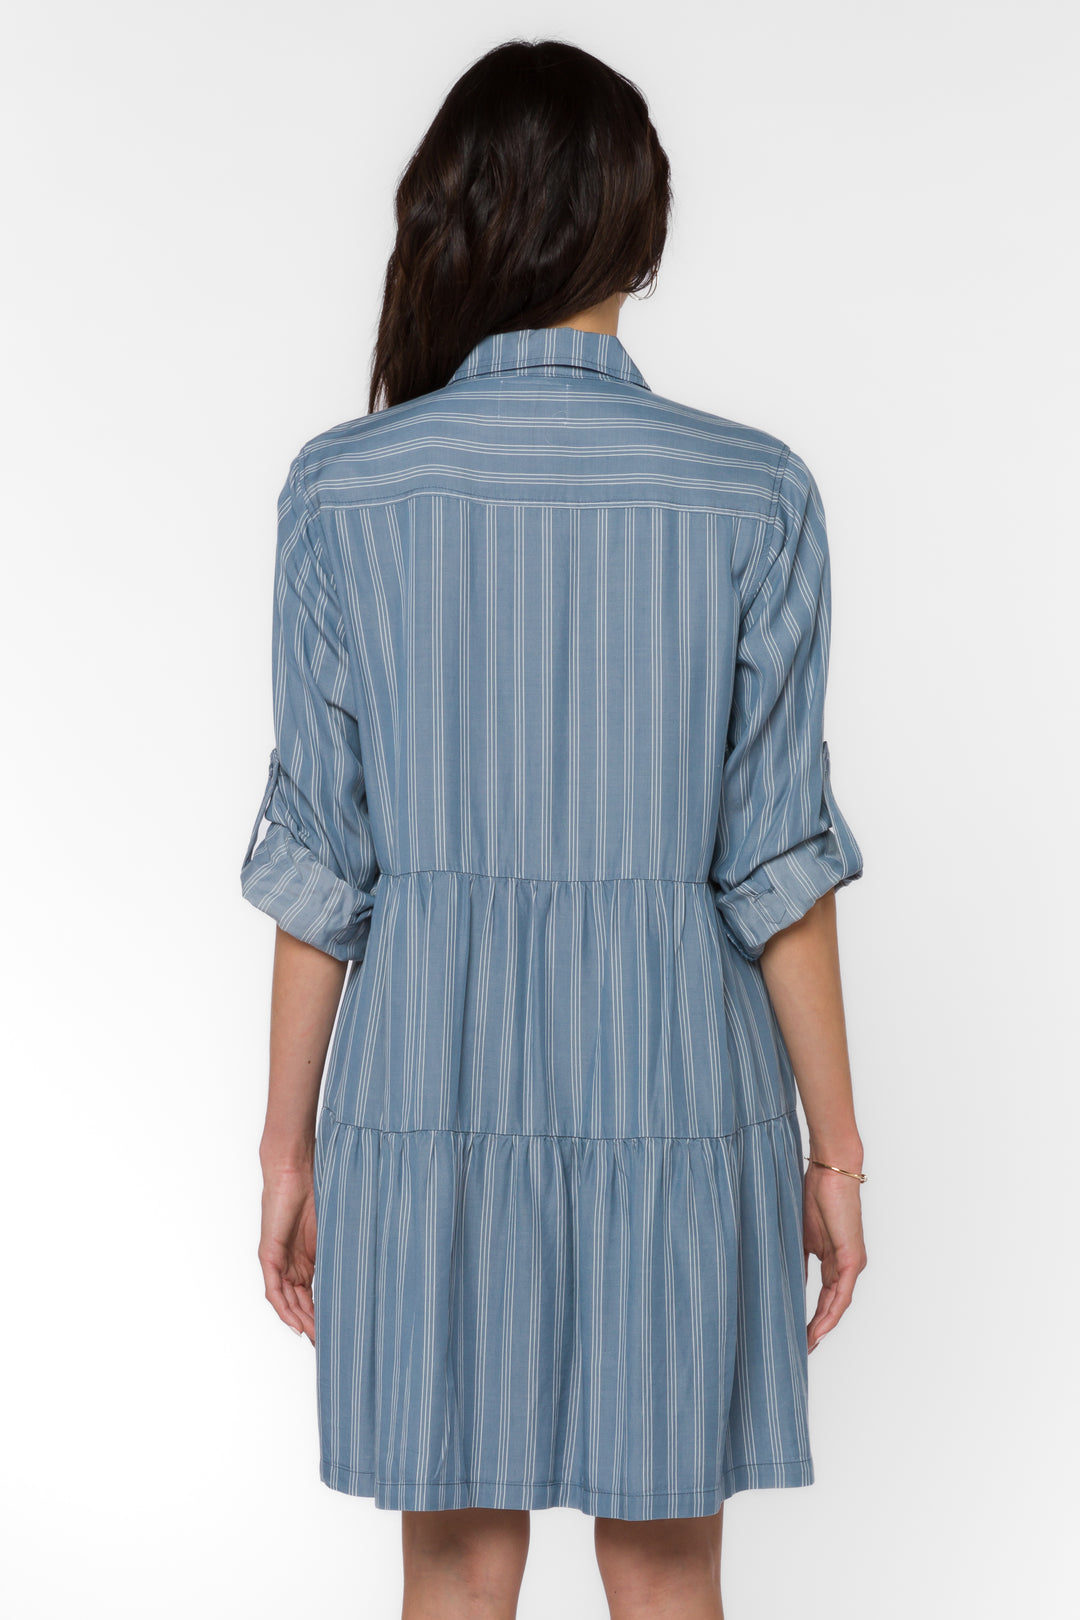 Bree Blue Spruce Stripe Dress - Dresses - Velvet Heart Clothing